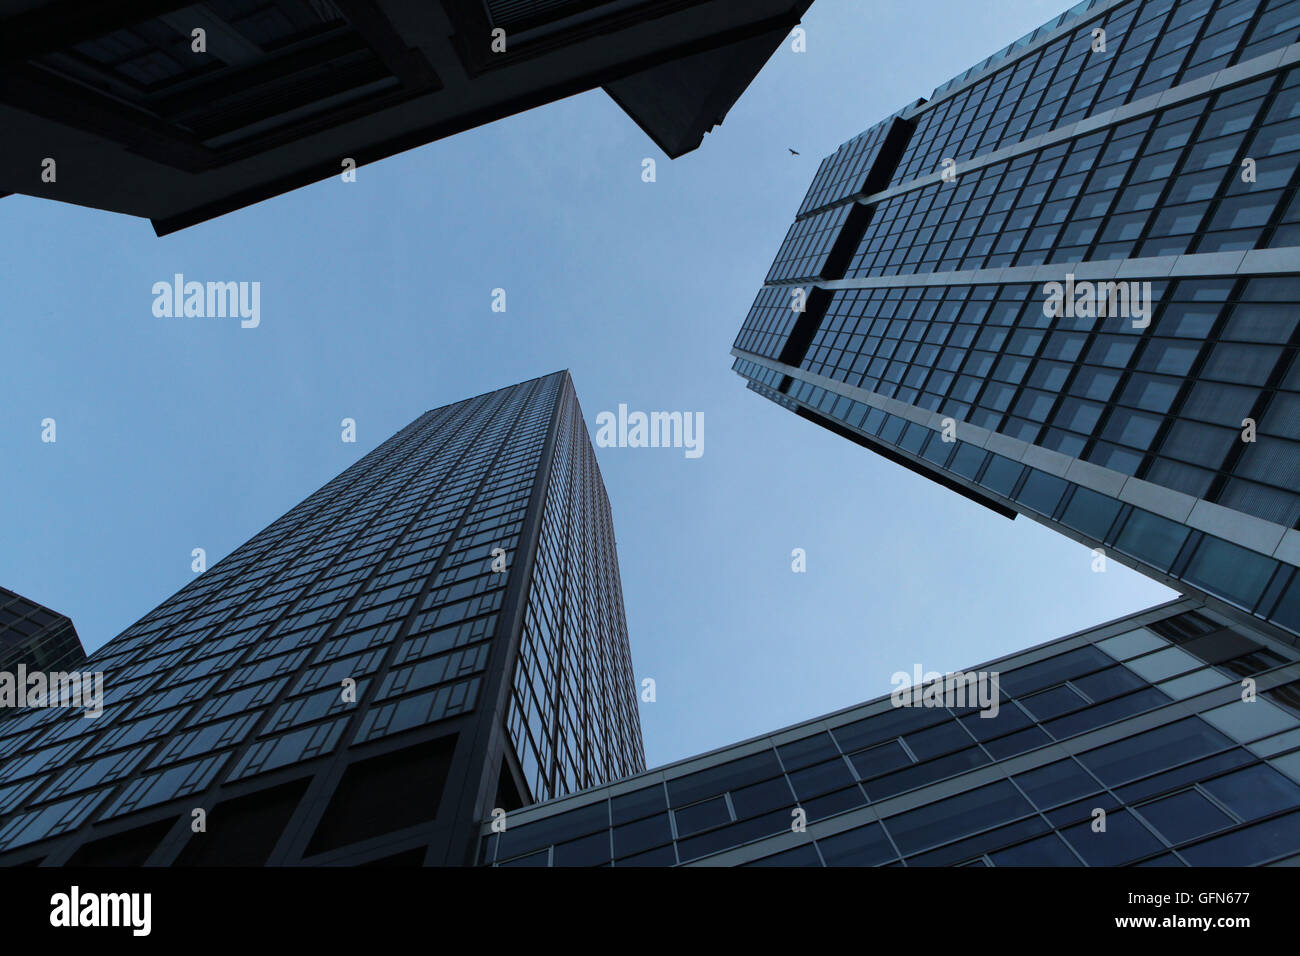 Modernos rascacielos en el distrito Bankenviertel (banca) en Frankfurt am Main, Hesse, Alemania. Foto de stock